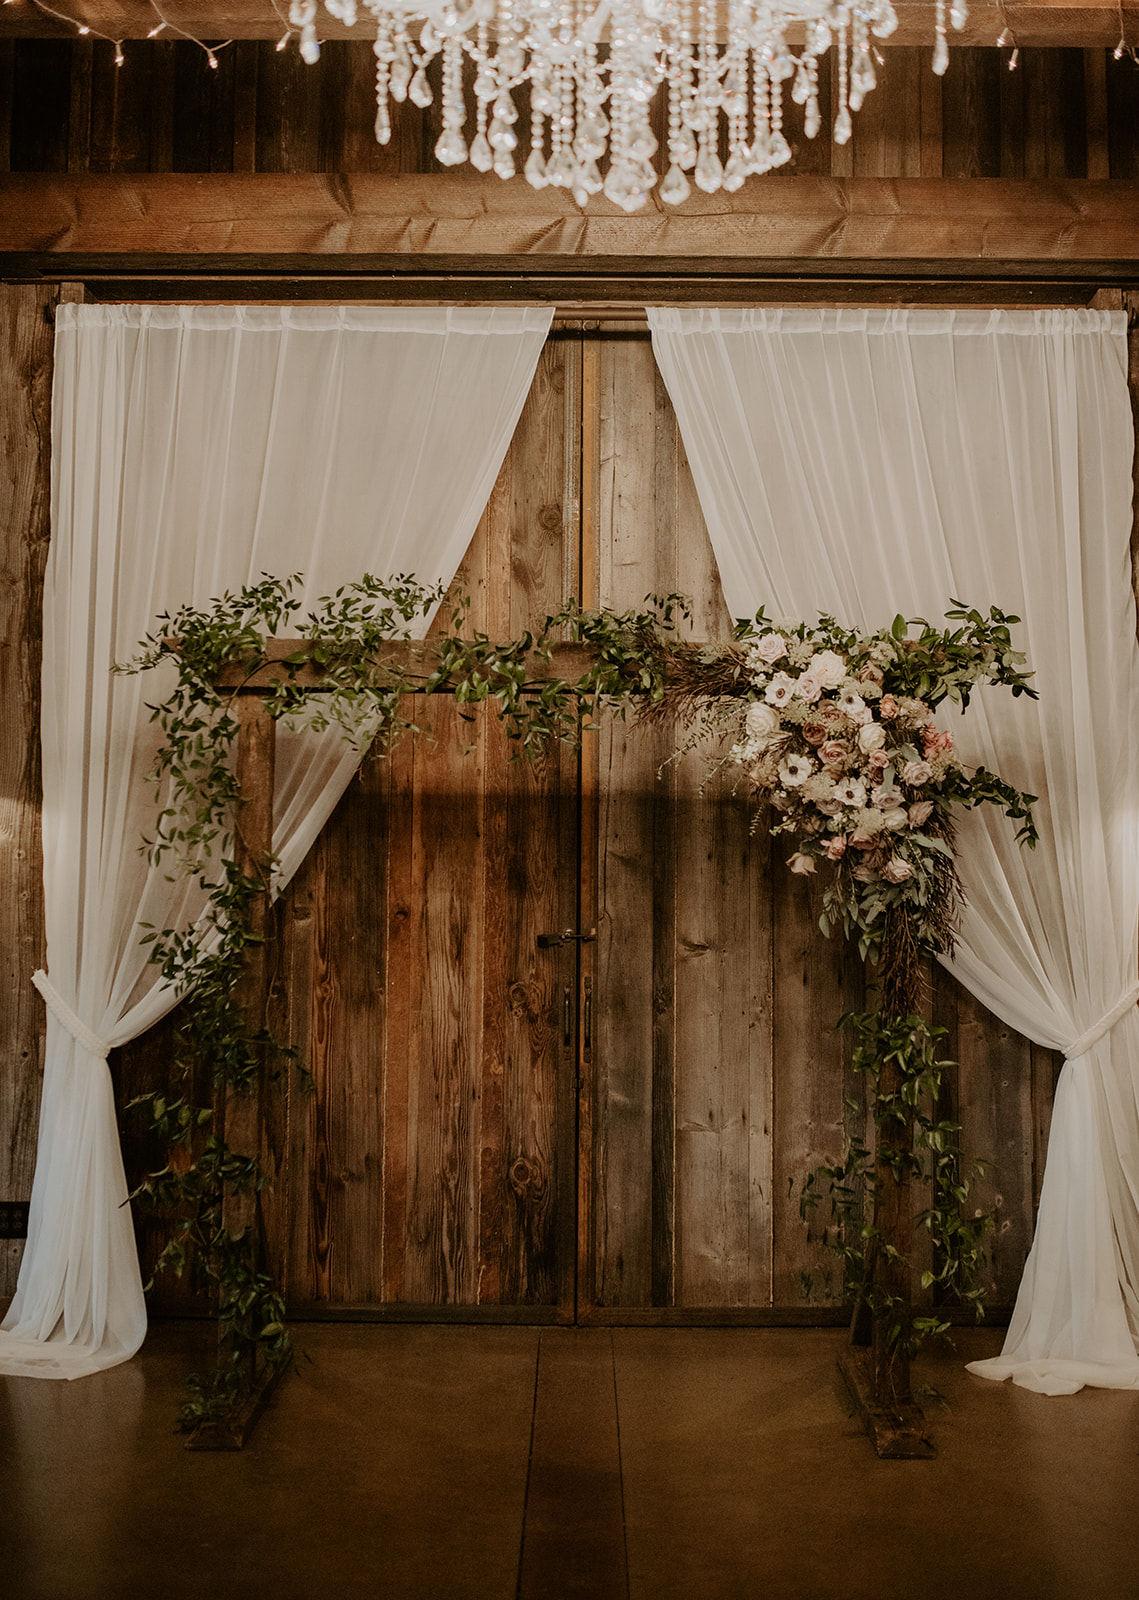 Kelley Farm wedding floral arch setup